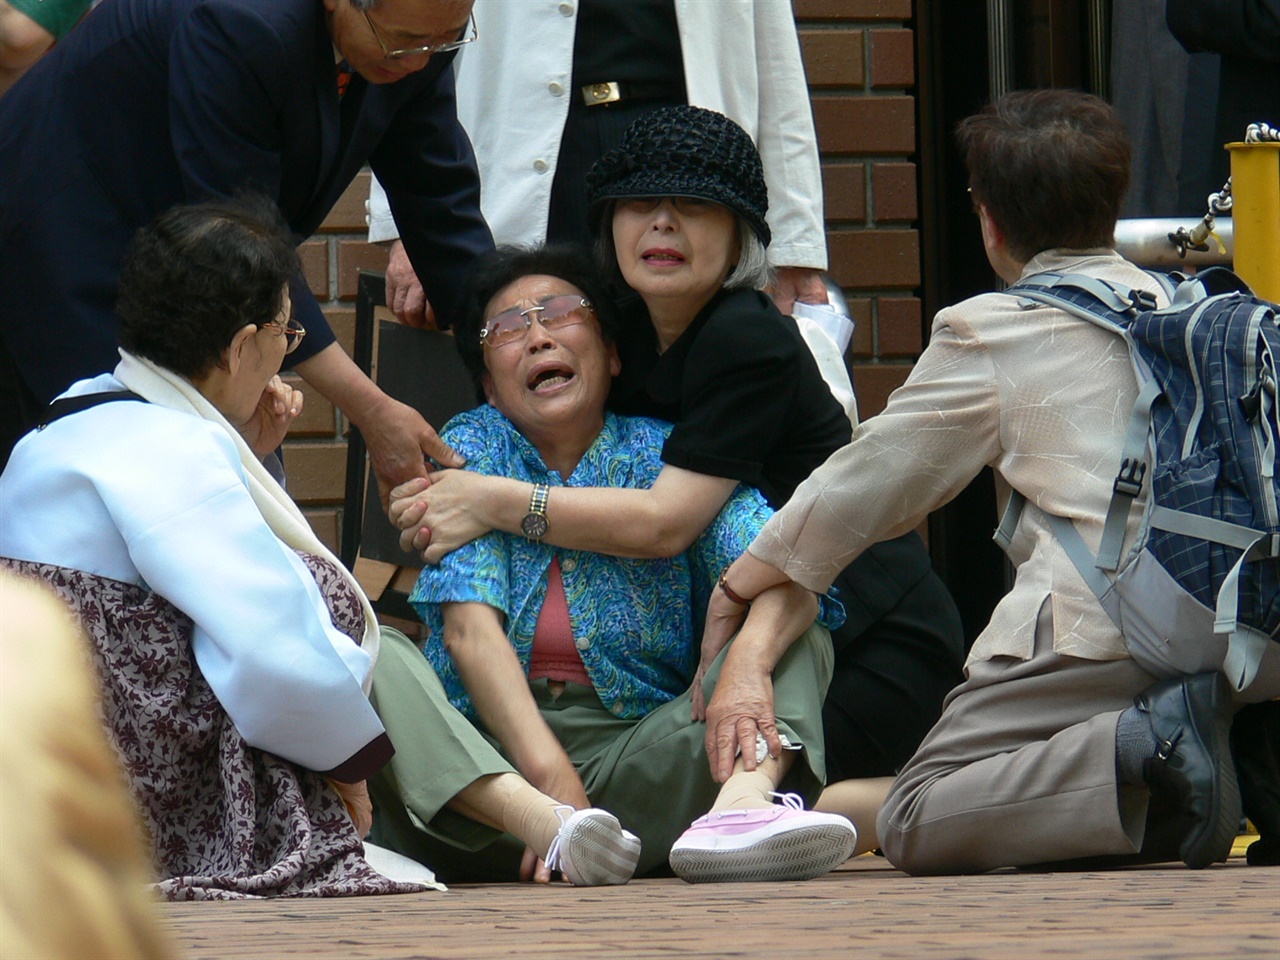 2007년 5월 31일, 1심에 이어 나고야고등재판소에서도 패소한 양금덕 할머니가 법정을 빠져 나오다 쓰러져 오열하자 옆에서 사람들이 달래고 있다.